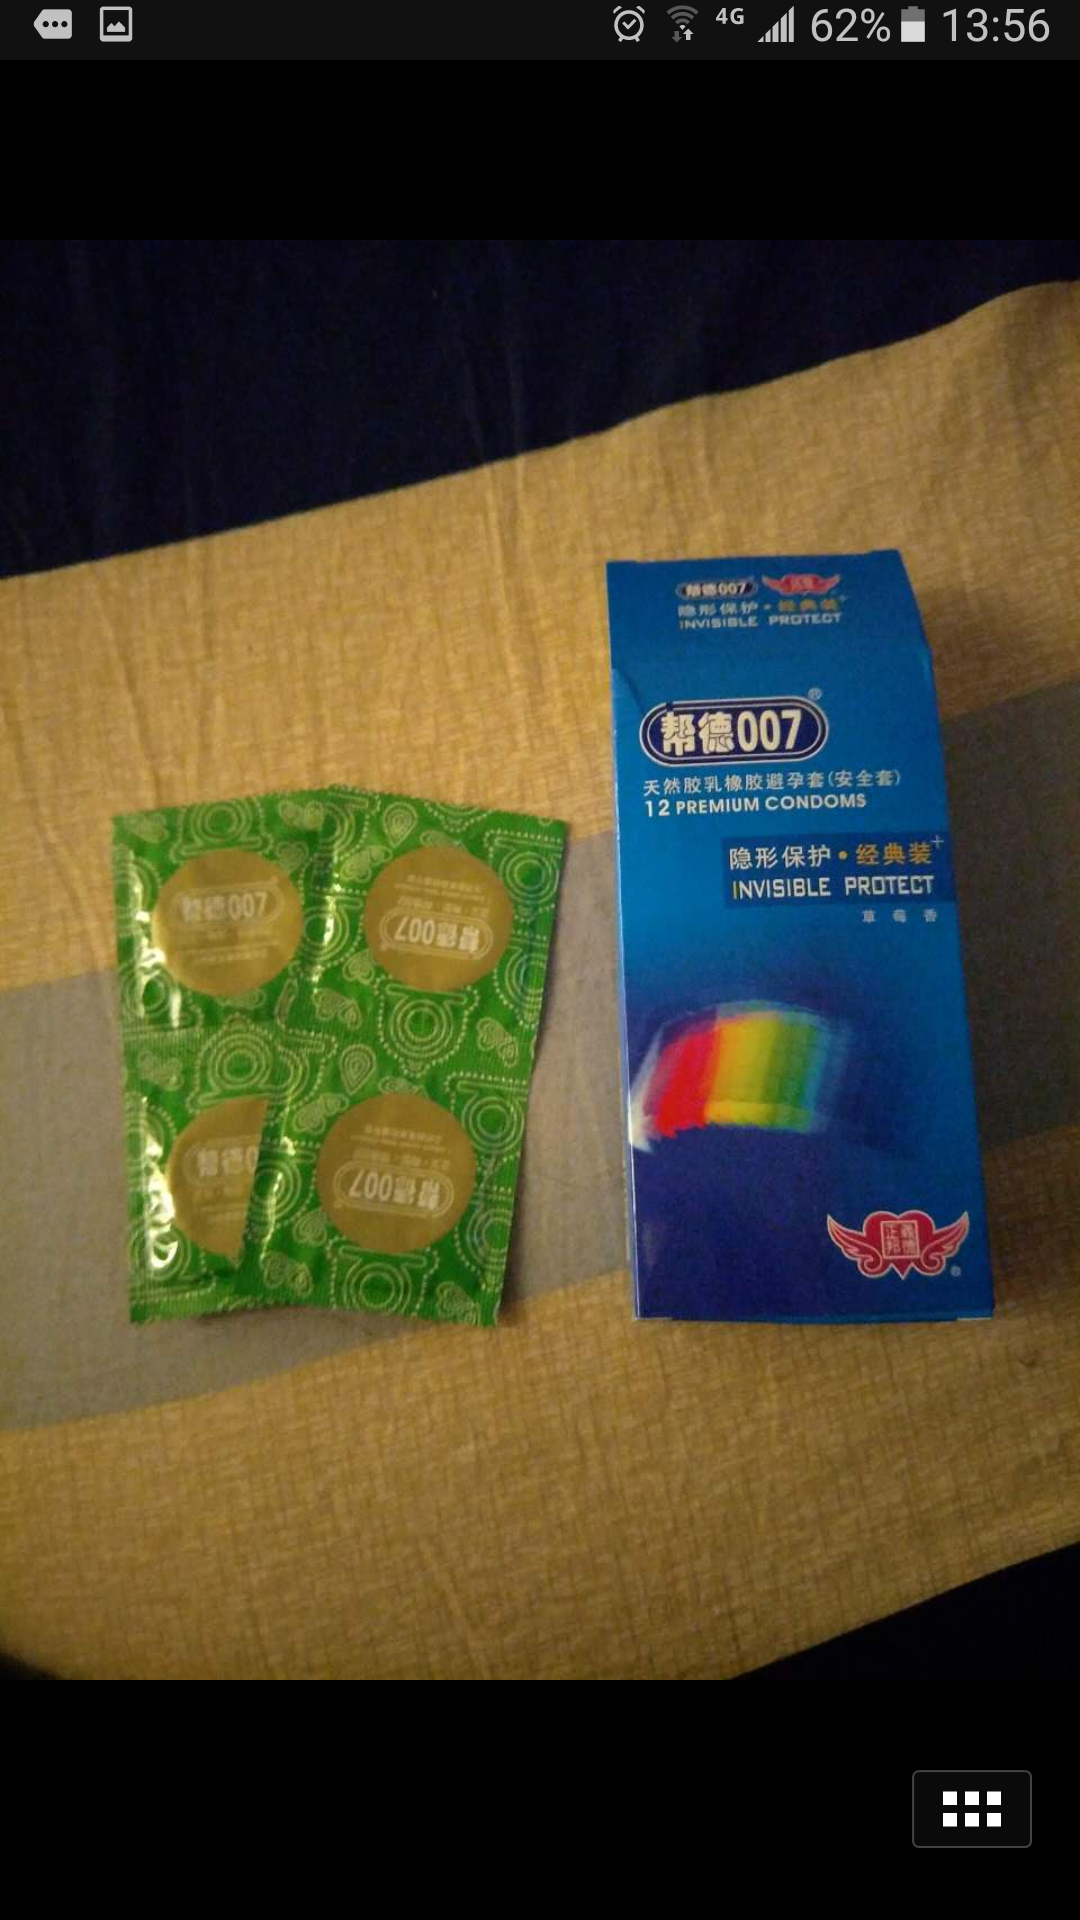 邦德007 隐形保护12片避孕套 男用 安全套 纤薄 经典系列计生用品